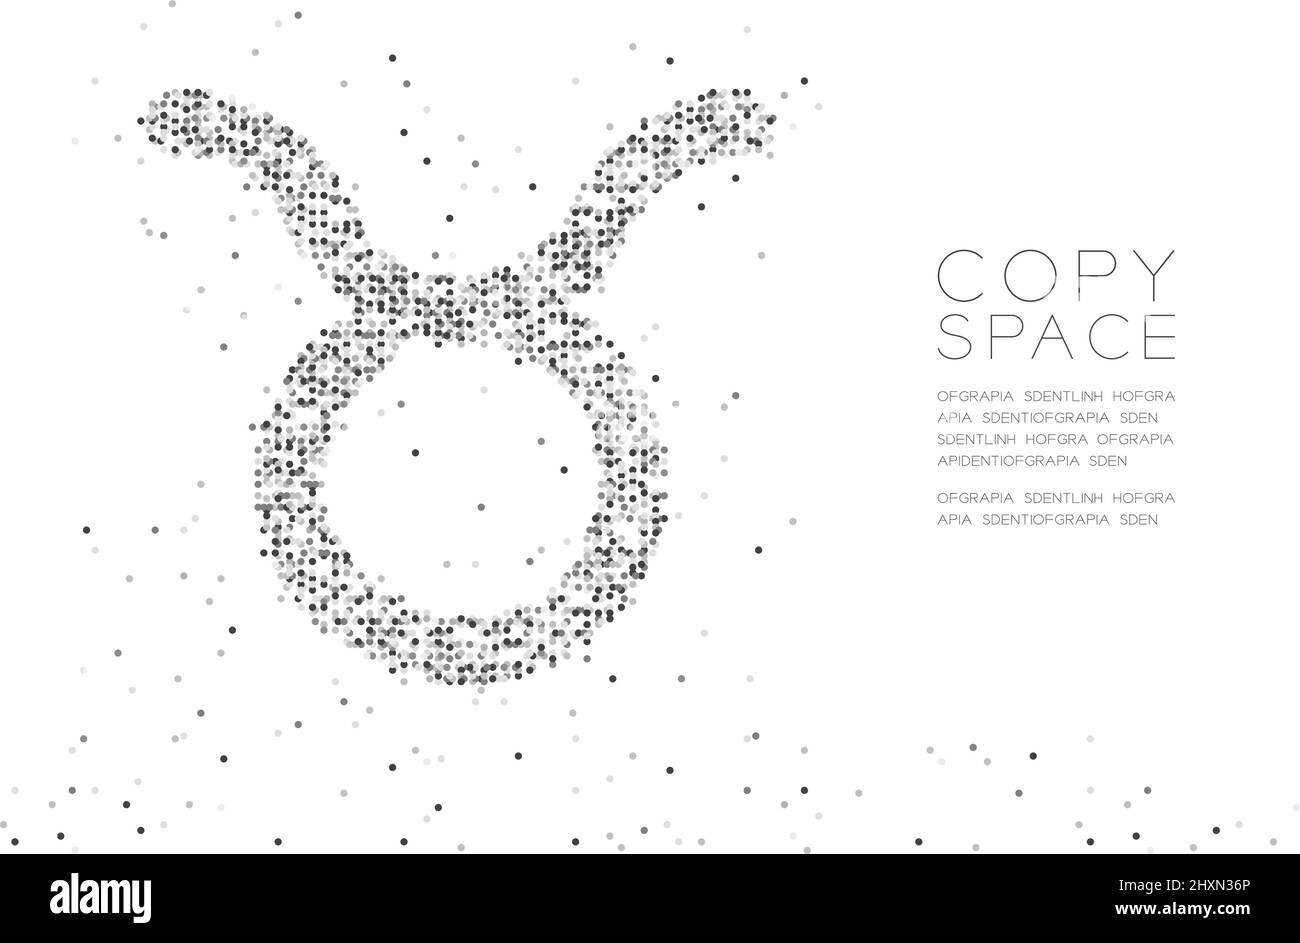 Abstrakt Geometrisches Kreis Punkt Pixel Muster Taurus Sternzeichen Form, Sternbild Konzept Design schwarze Farbe Illustration auf weißem Hintergrund w Stock Vektor